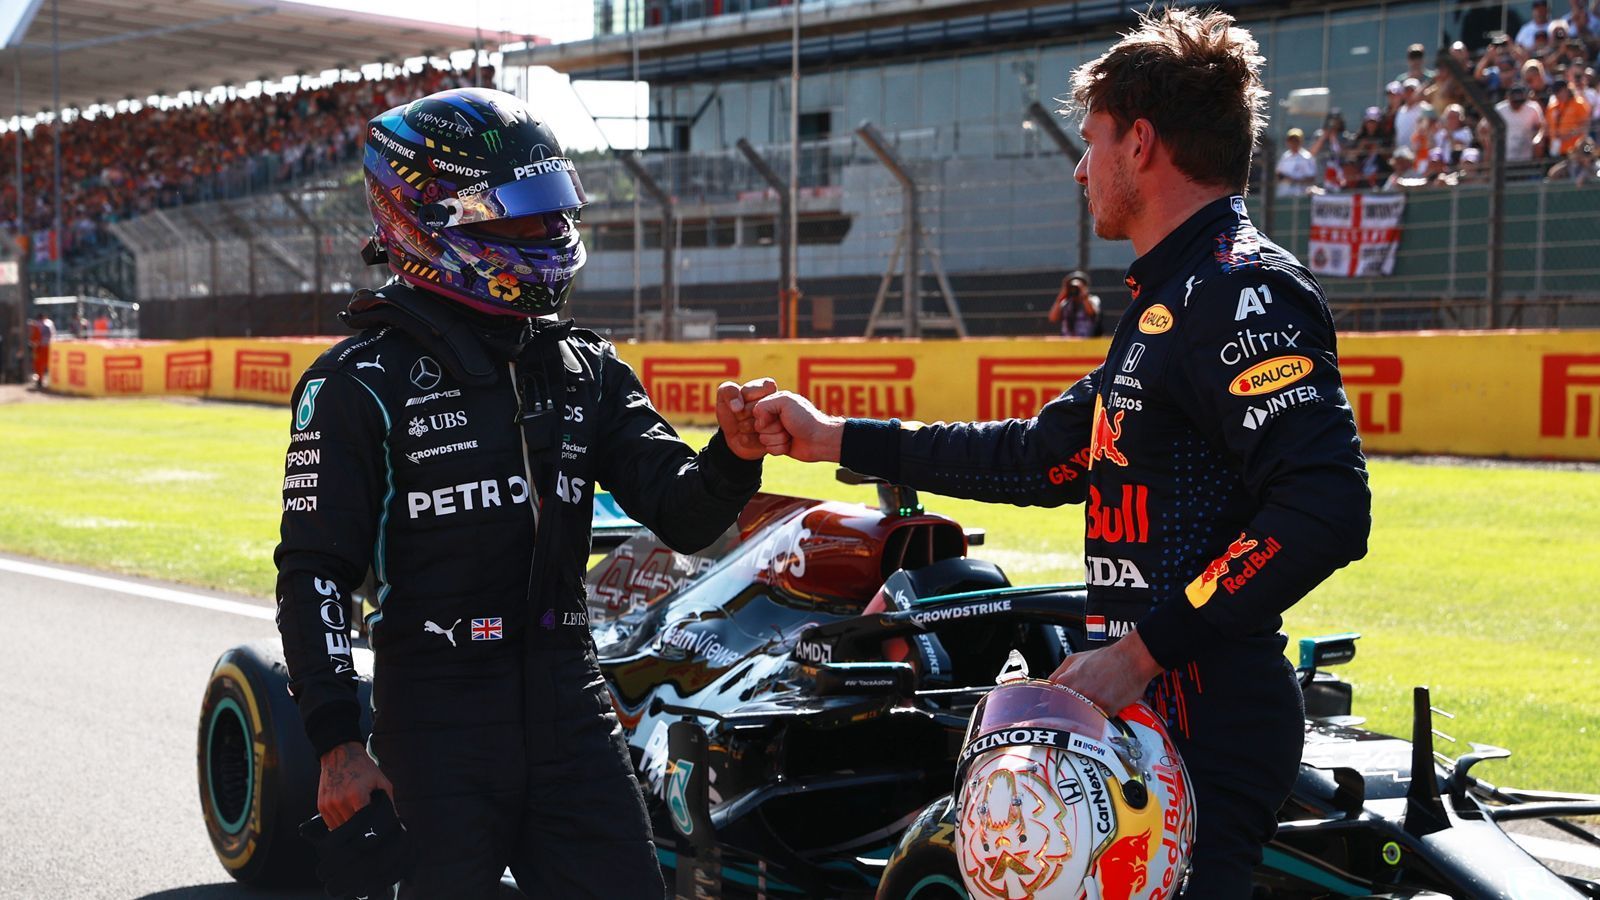 
                <strong>Netzreaktionen zum GP in Silverstone</strong><br>
                Der große Preis von Großbritannien in Silverstone wird zum großen Duell zwischen den beiden WM-Matadoren Max Verstappen und Lewis Hamilton. ran zeigt die Netzreaktionen.
              